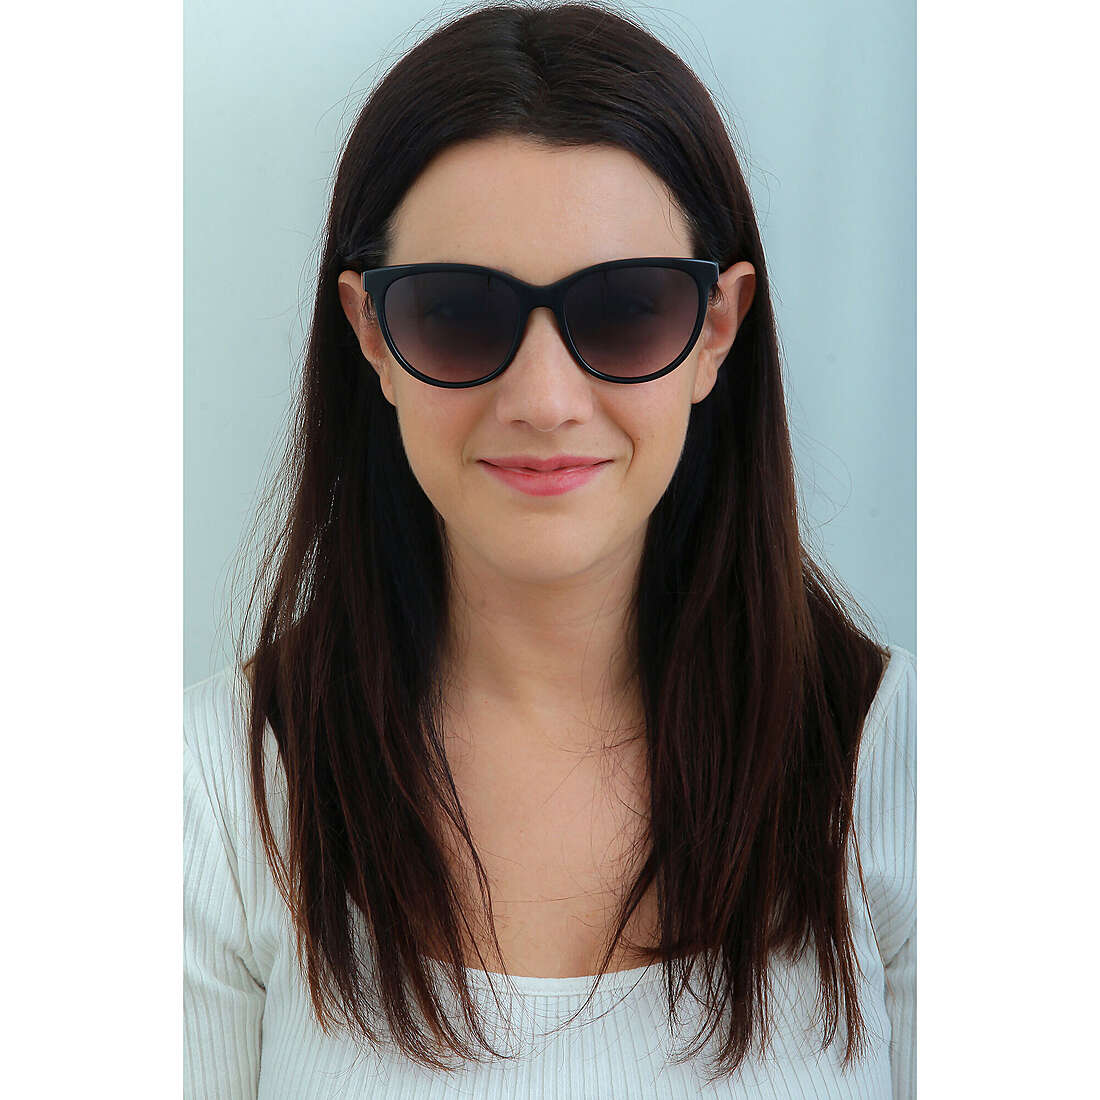 Twinset occhiali da sole donna STW0200700 indosso